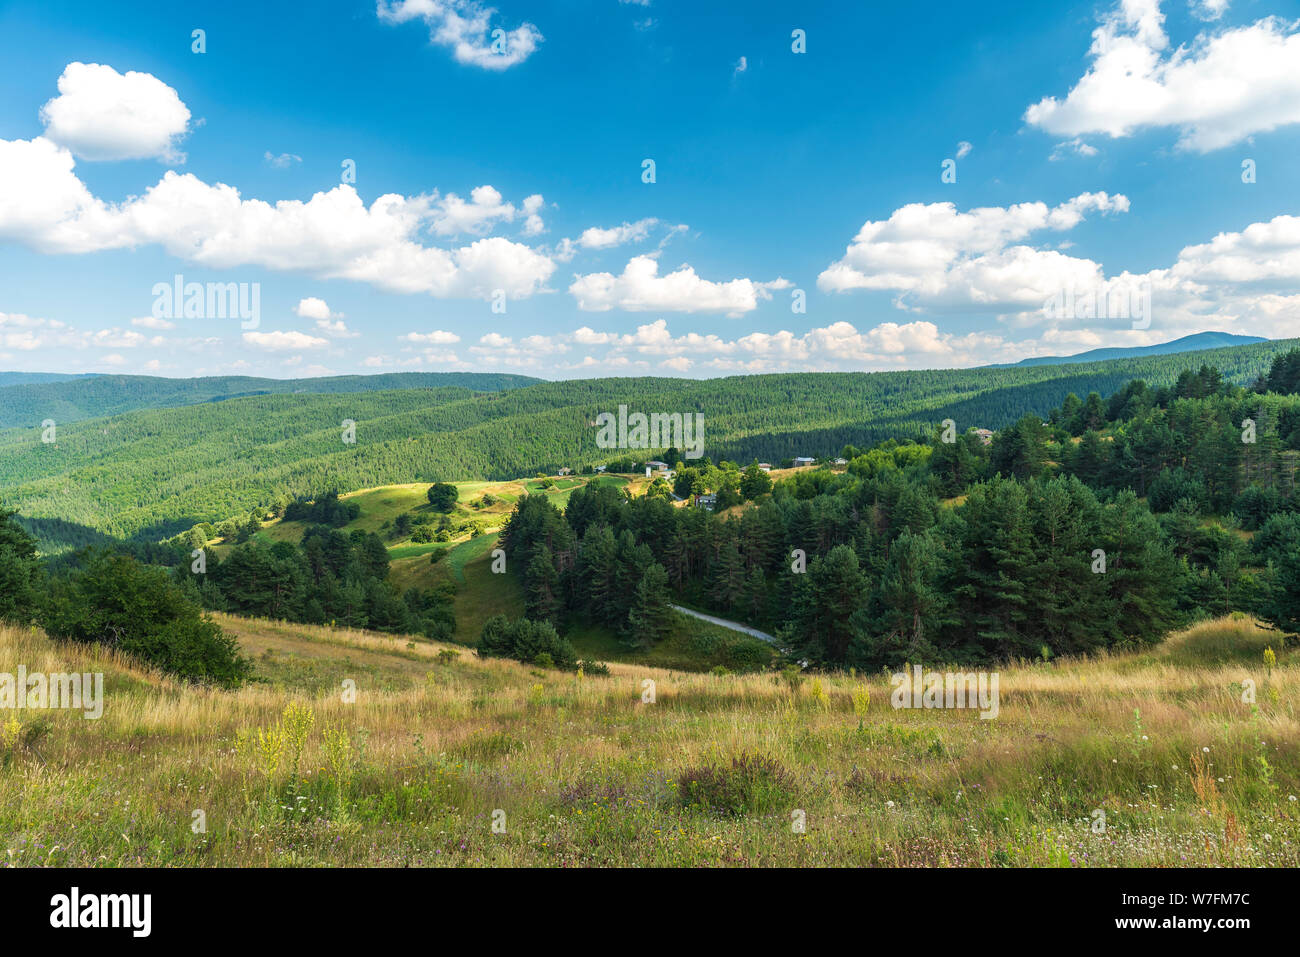 Incroyable montagne paysage avec ciel bleu avec des nuages blancs, les sorties en plein air naturel l'arrière-plan. Rhodopes, Bulgarie, Churen village Banque D'Images